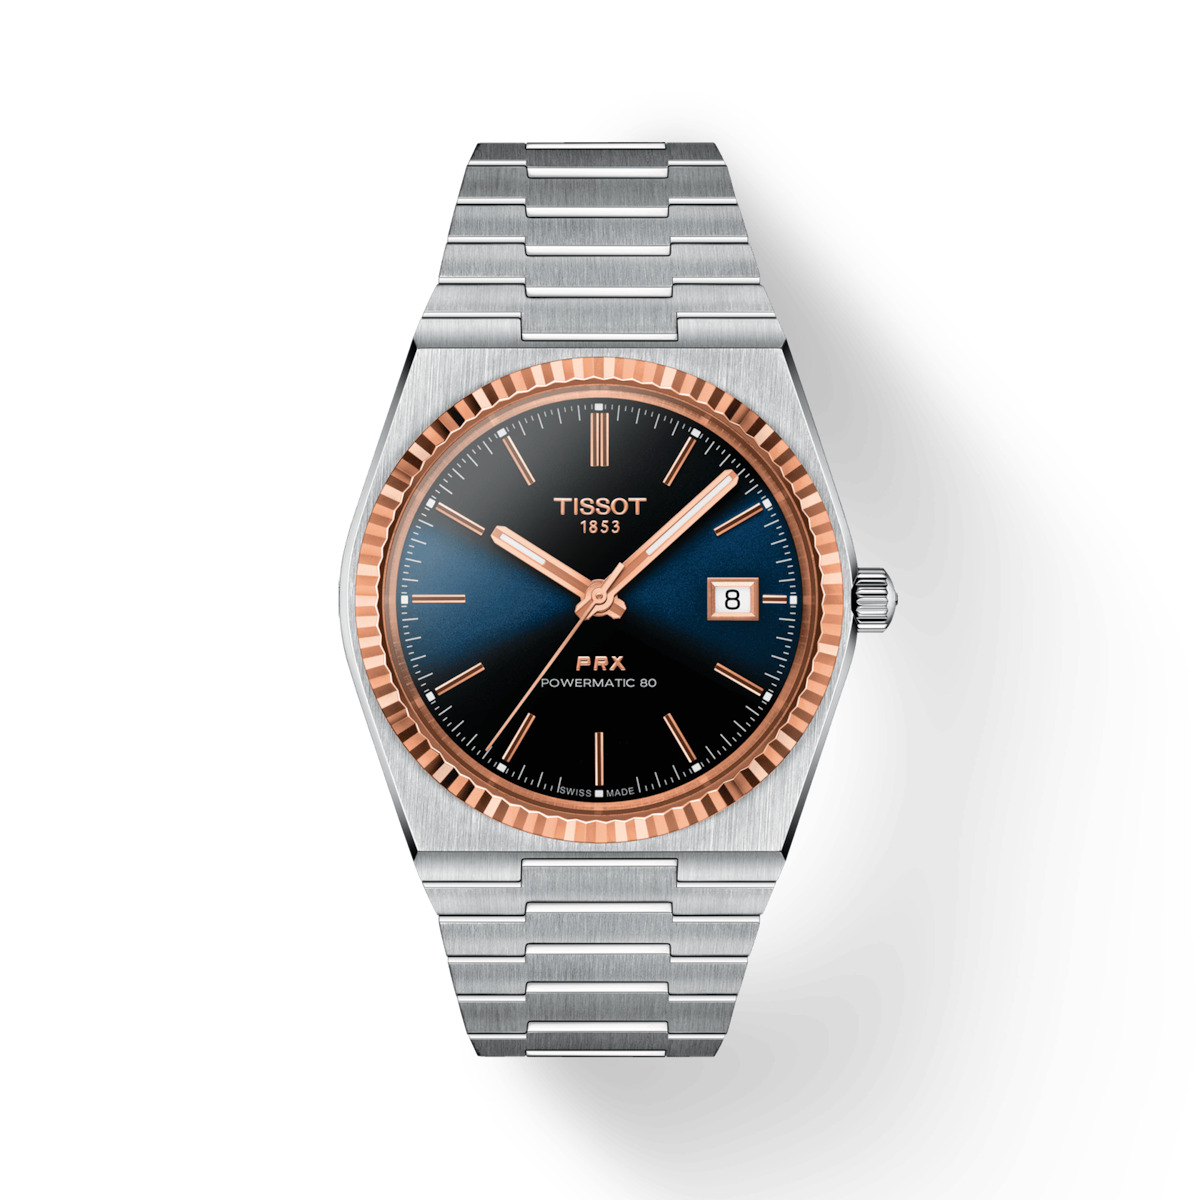 Thiết kế tinh xảo, tỉ mỉ của đồng hồ nam Tissot chính hãng.